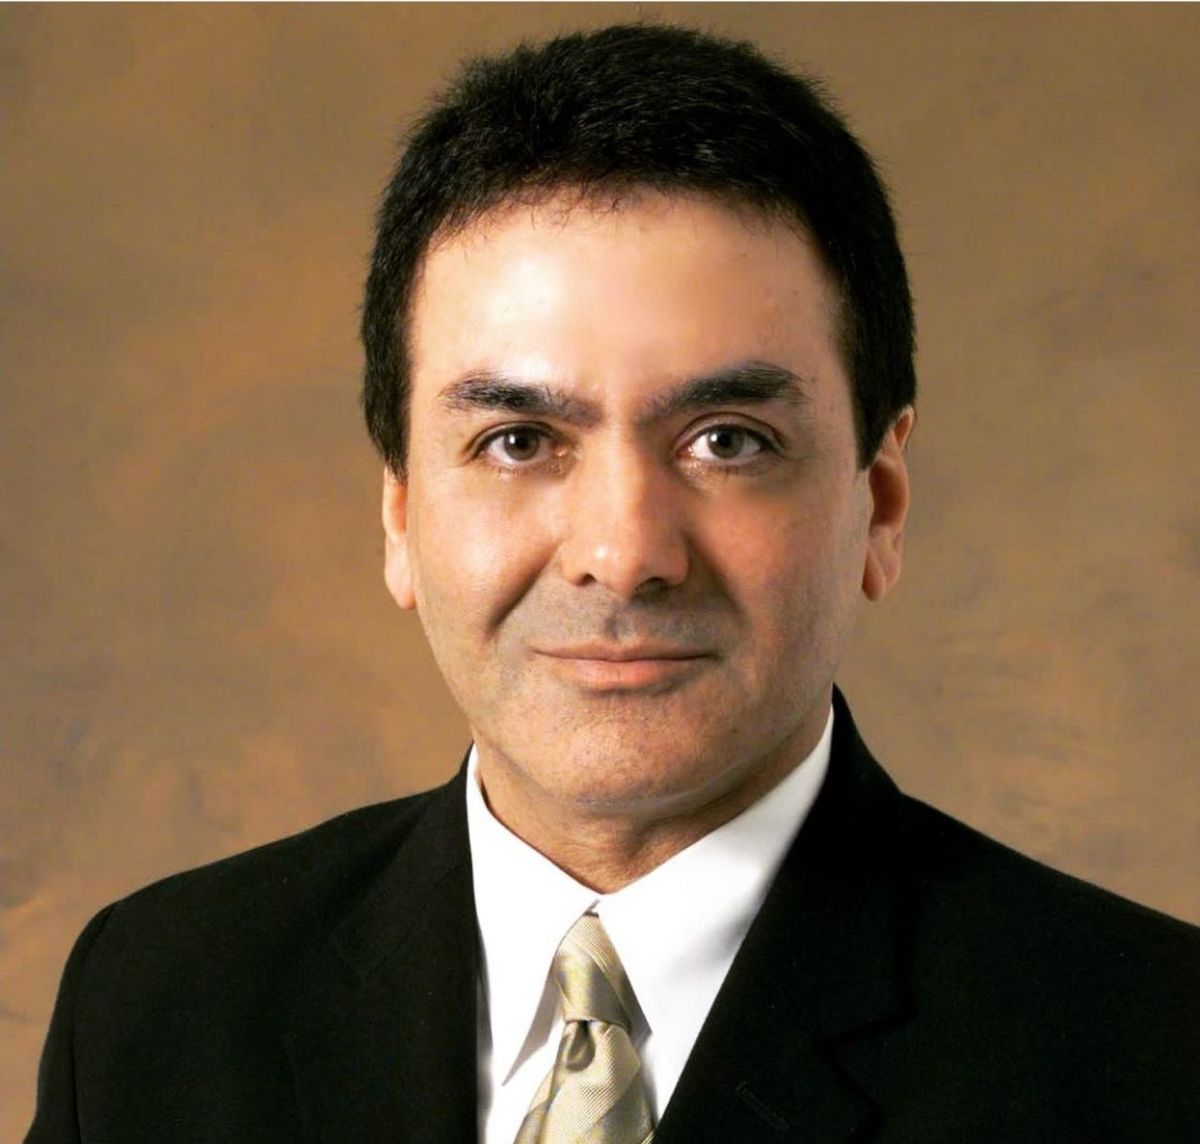 فیروز نادری، دانشمند ایرانی و از مدیران پیشین ناسا، درگذشت